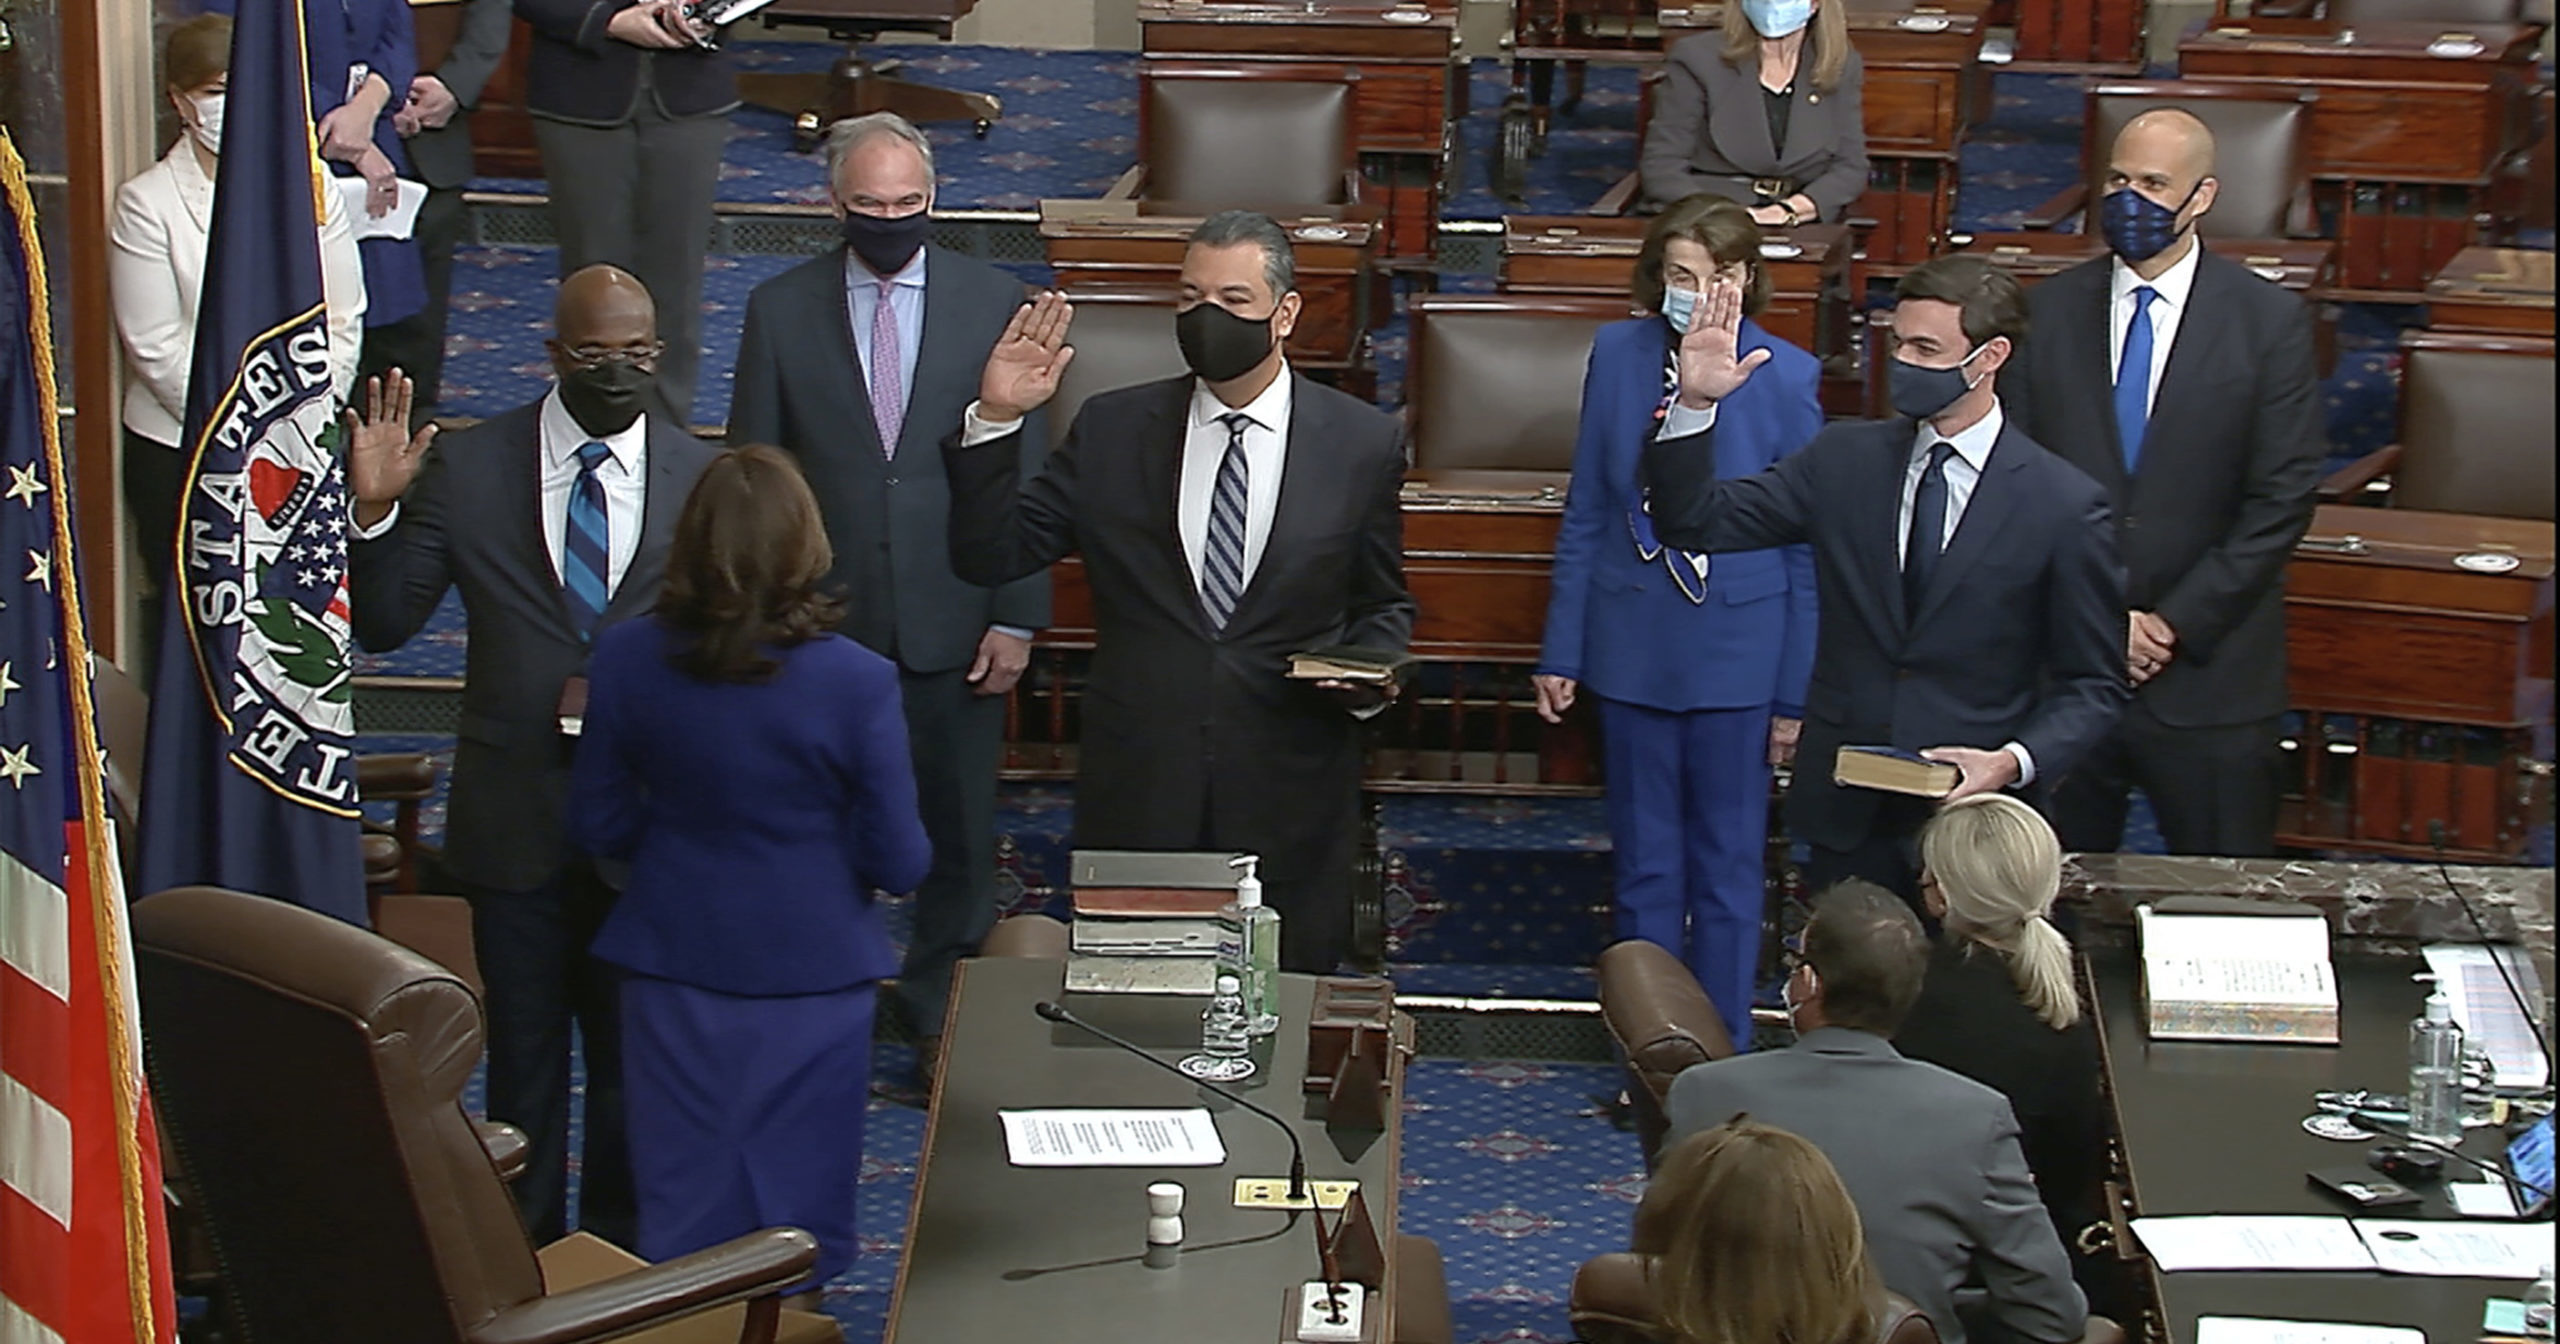 Vice President Kamala Harris swears in Sen. Raphael Warnock, Sen. Alex Padilla and Sen. Jon Ossoff on the floor of the Senate on Jan. 6, 2021, on Capitol Hill in Washington, D.C.